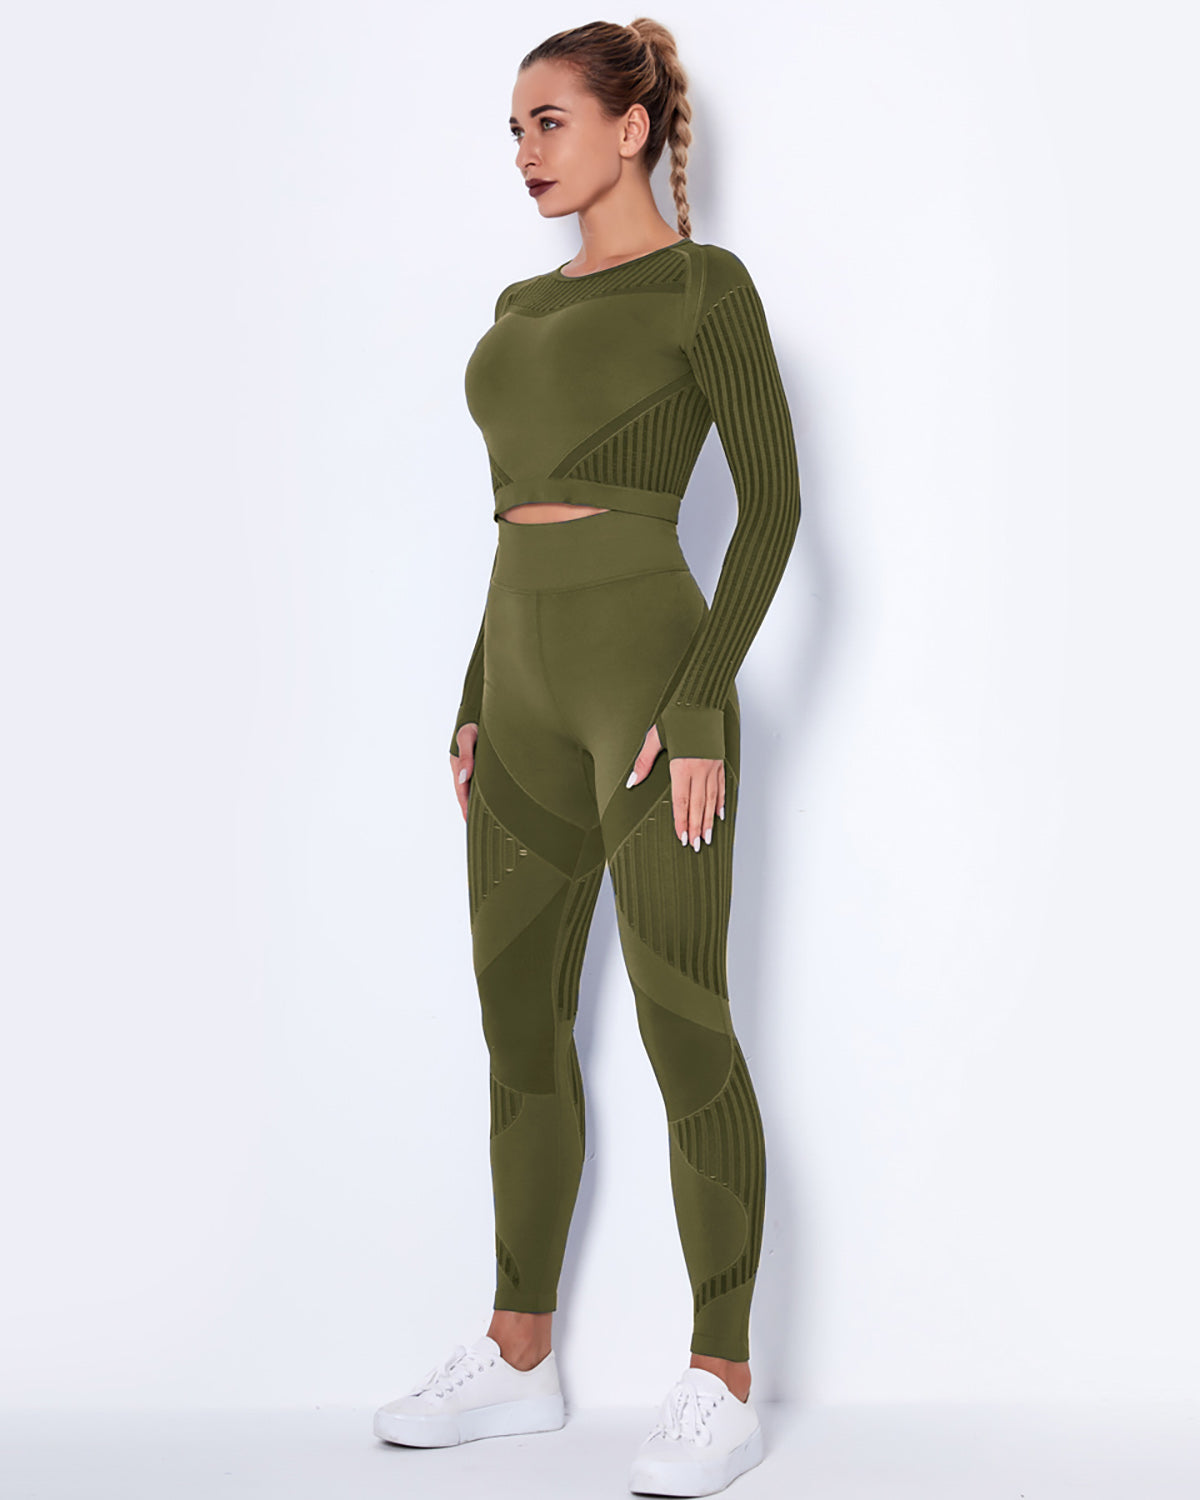 Lorica Long Sleeve – Amelia Activewear